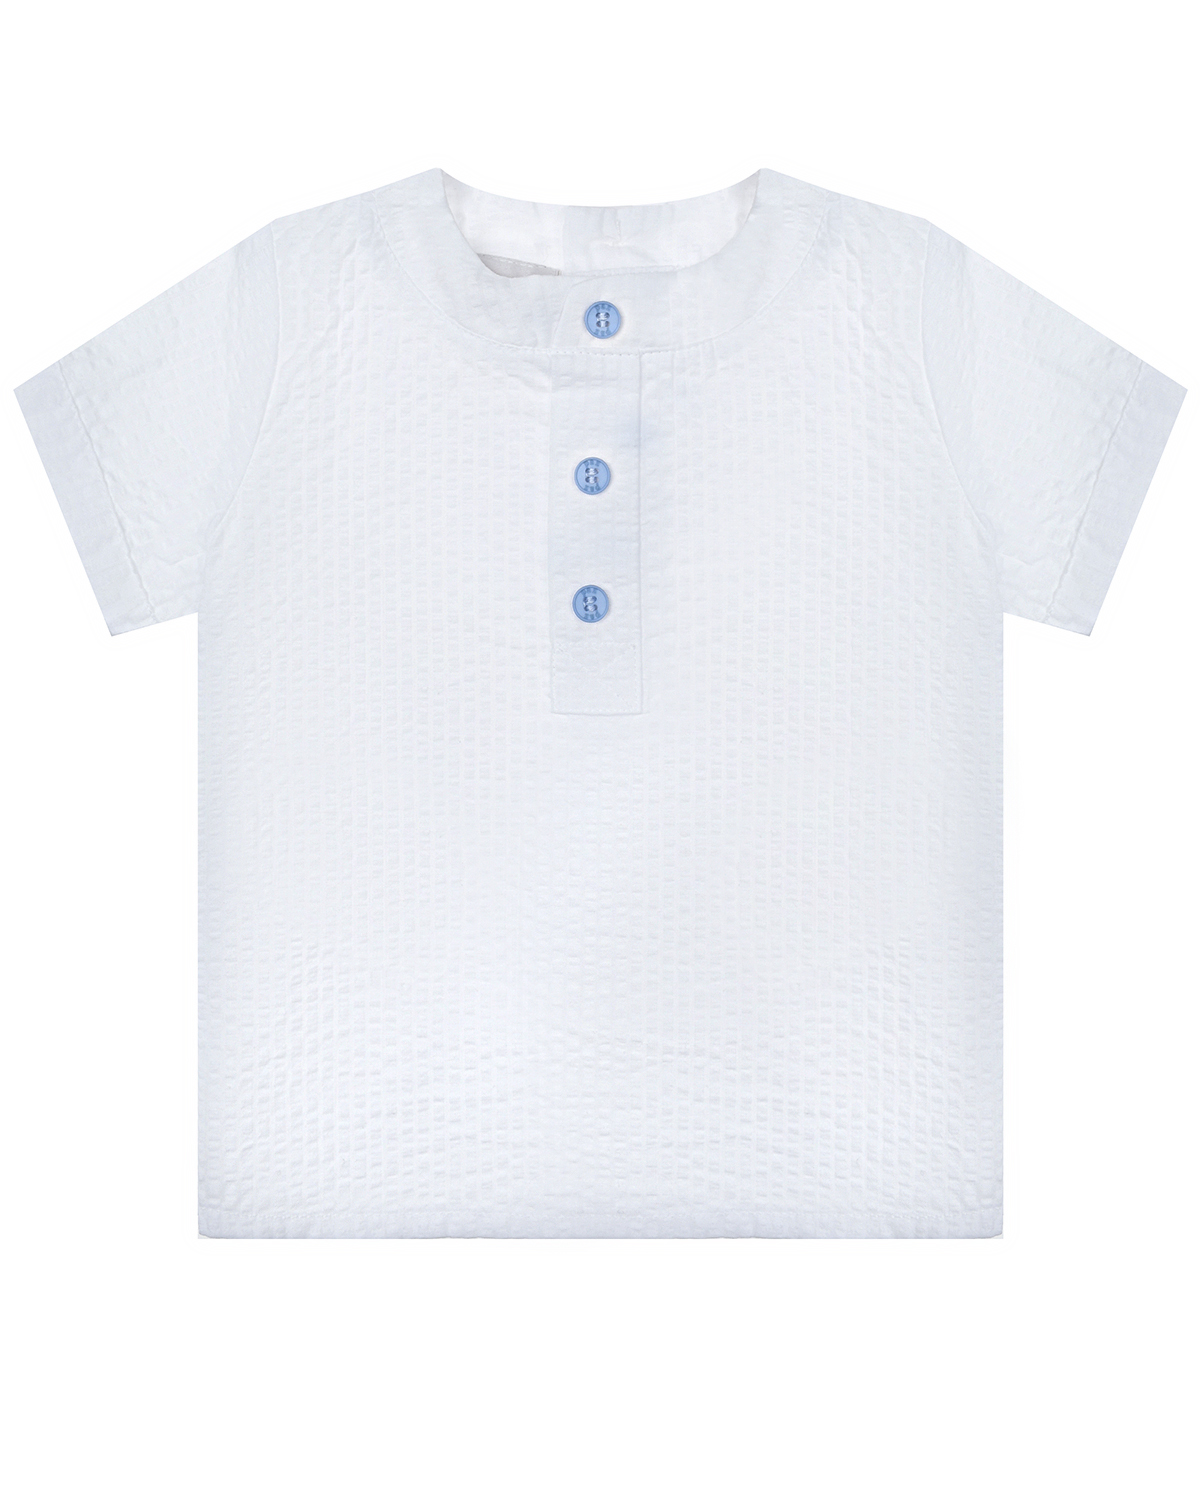 Трикотажная рубашка без воротника Paz Rodriguez, размер 86, цвет белый - фото 1